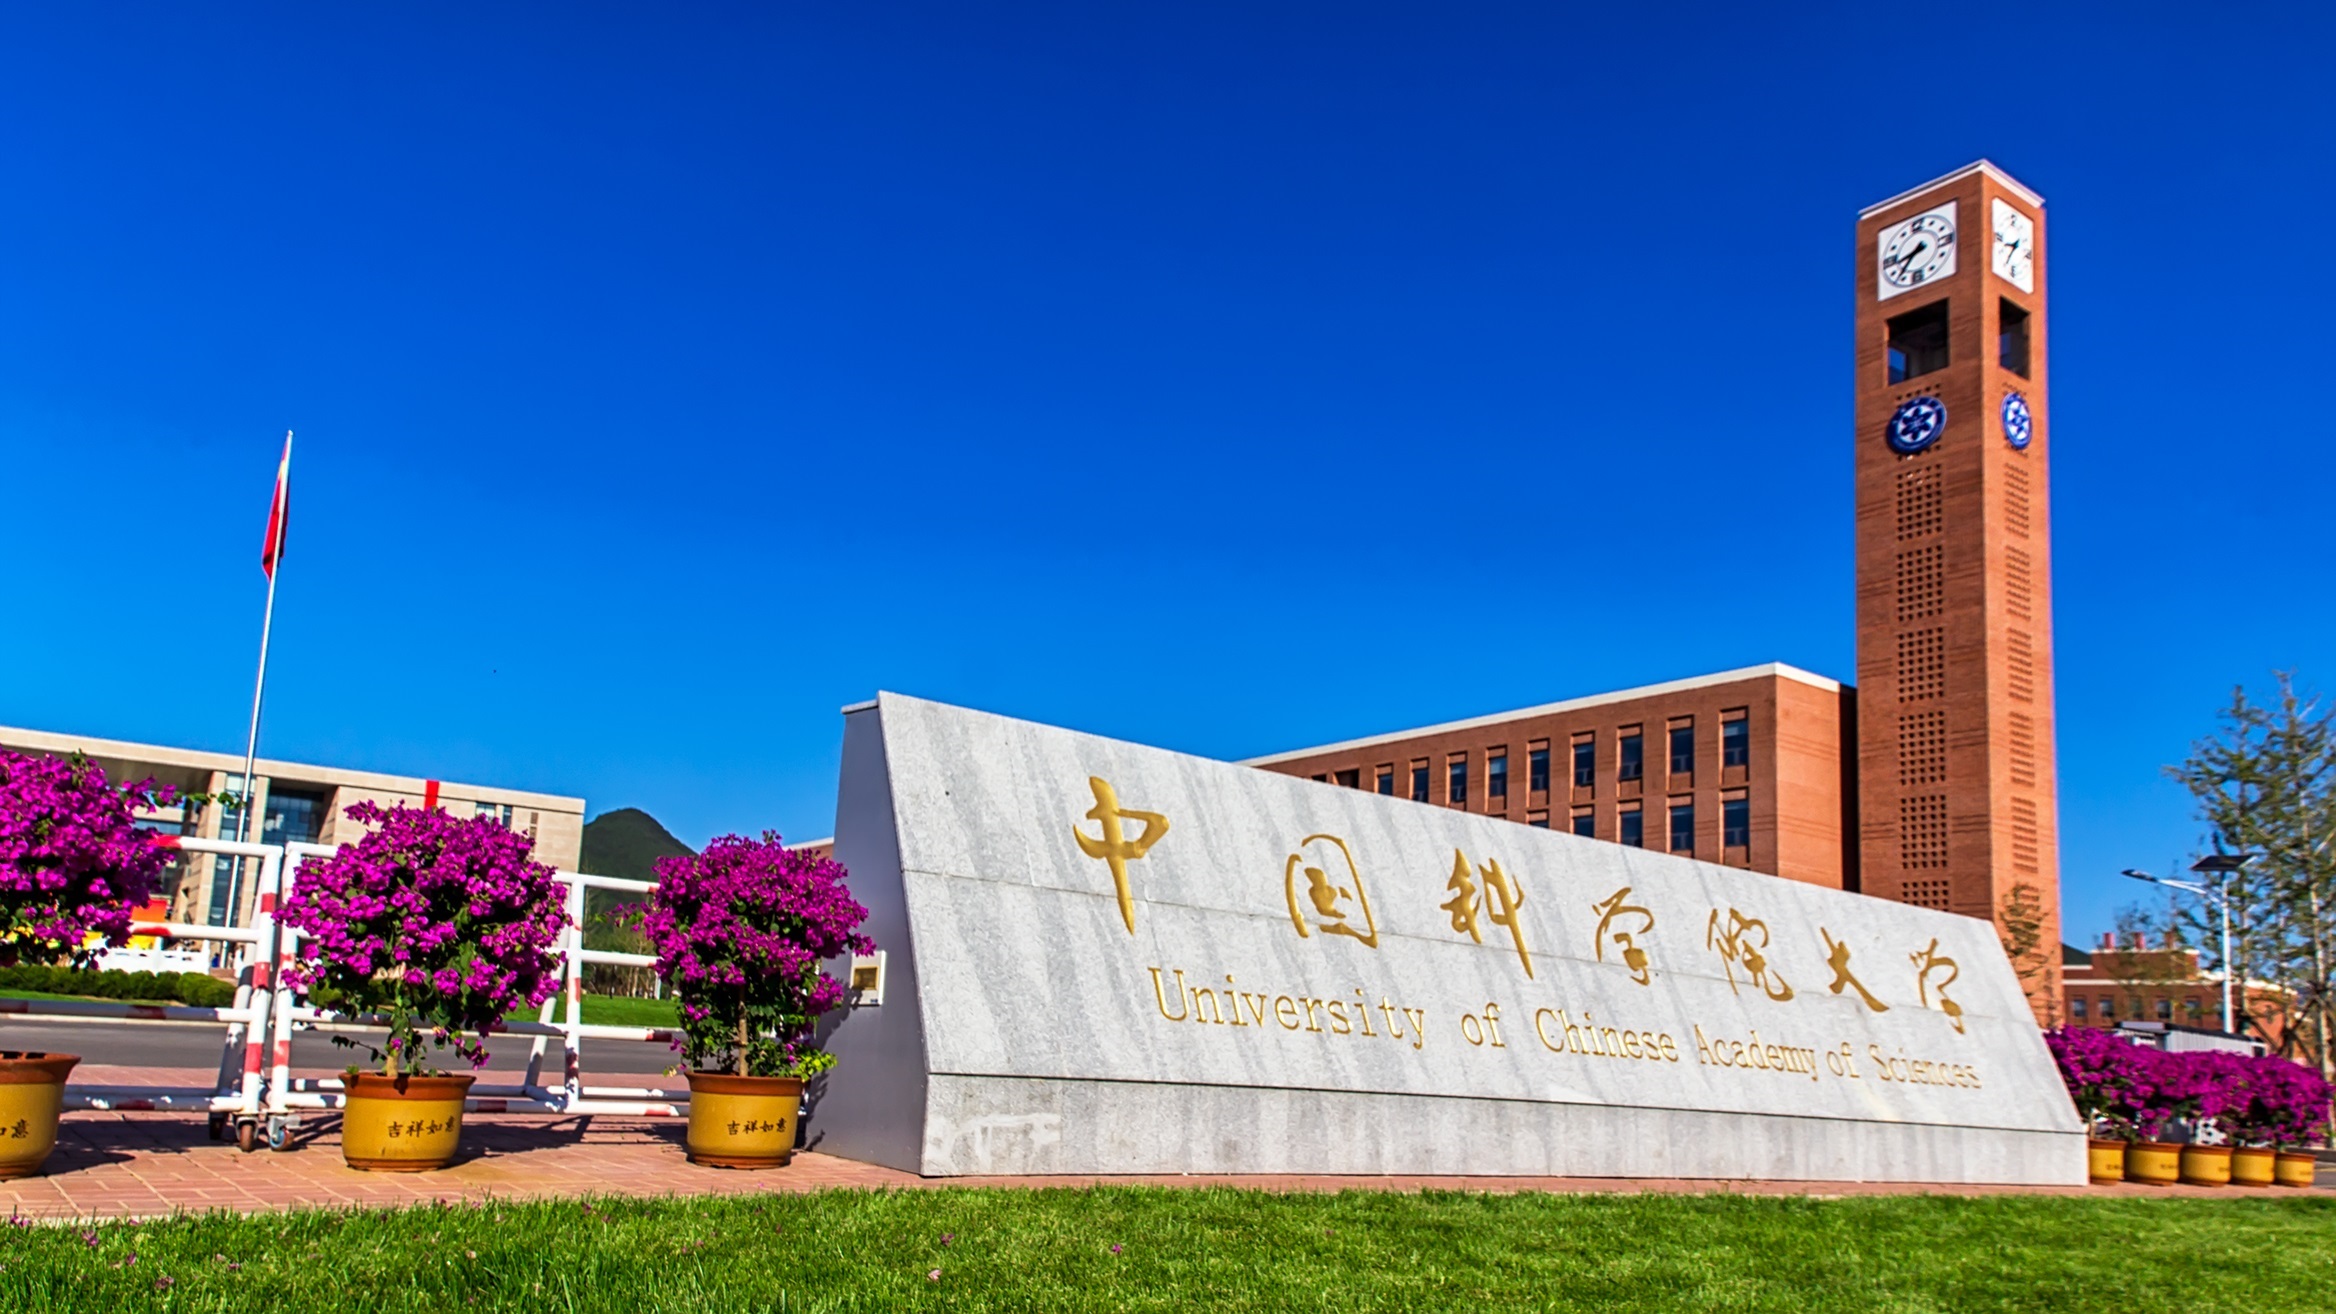 ทุนการศึกษามหาวิทยาลัยแห่งสถาบันบัณฑิตวิทยาศาสตร์จีน (University of Chinese Academy of Sciences: UCAS)